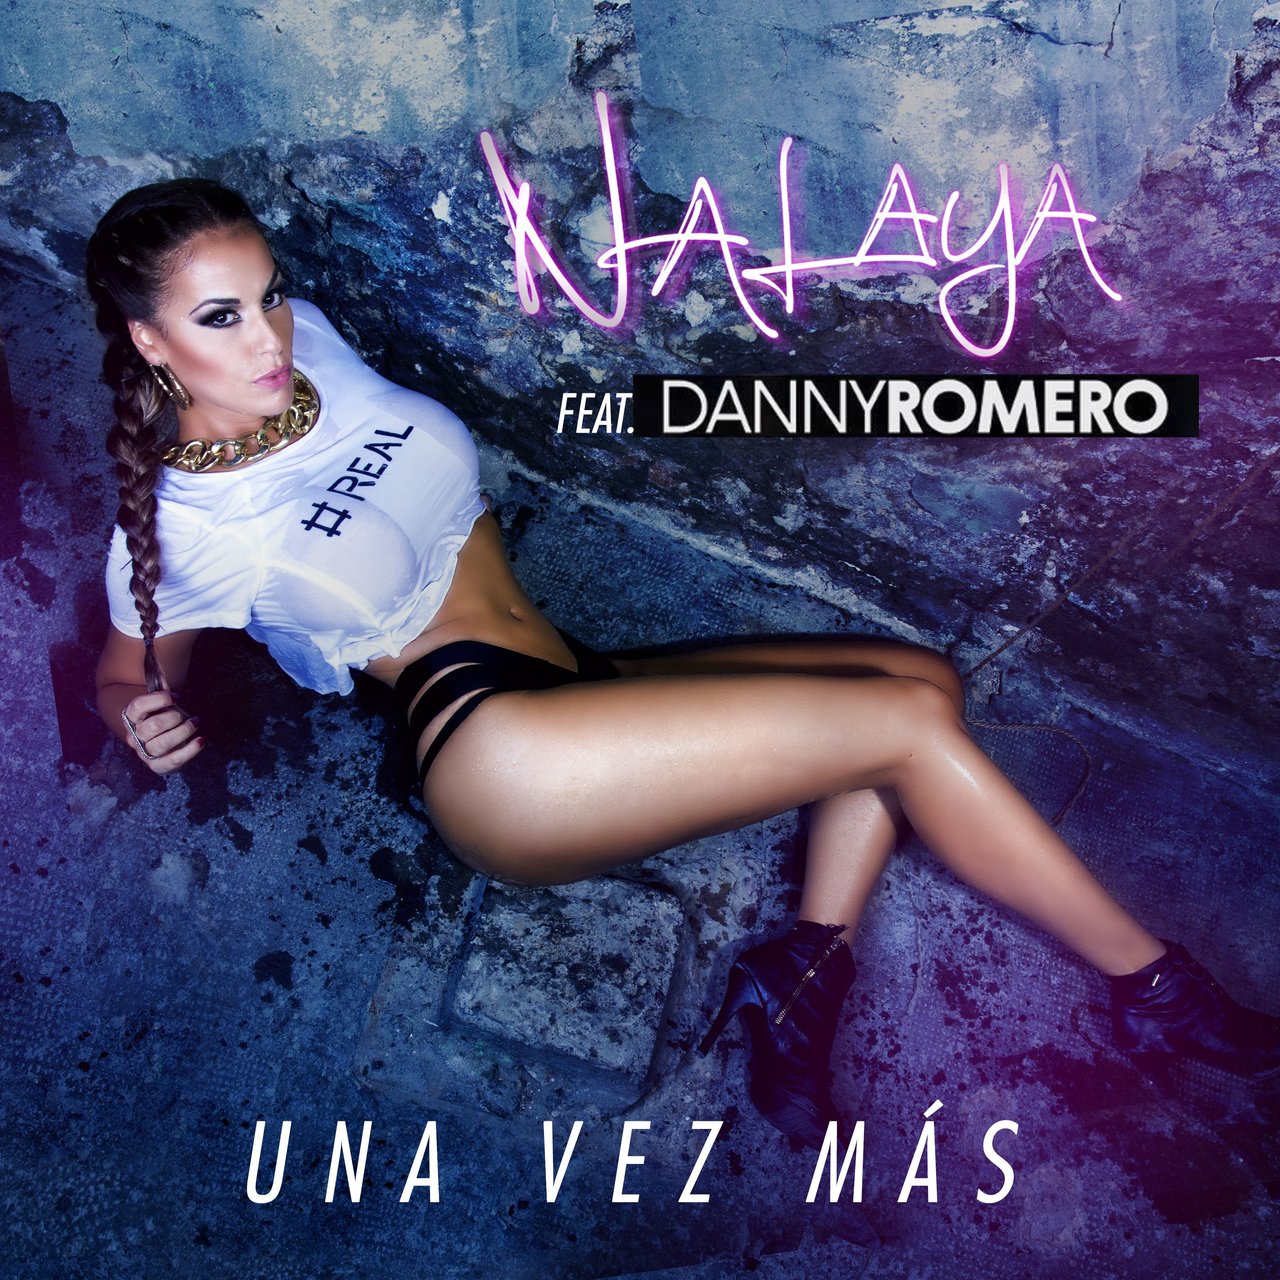 Nalaya featuring Danny Romero — Una Vez Más cover artwork